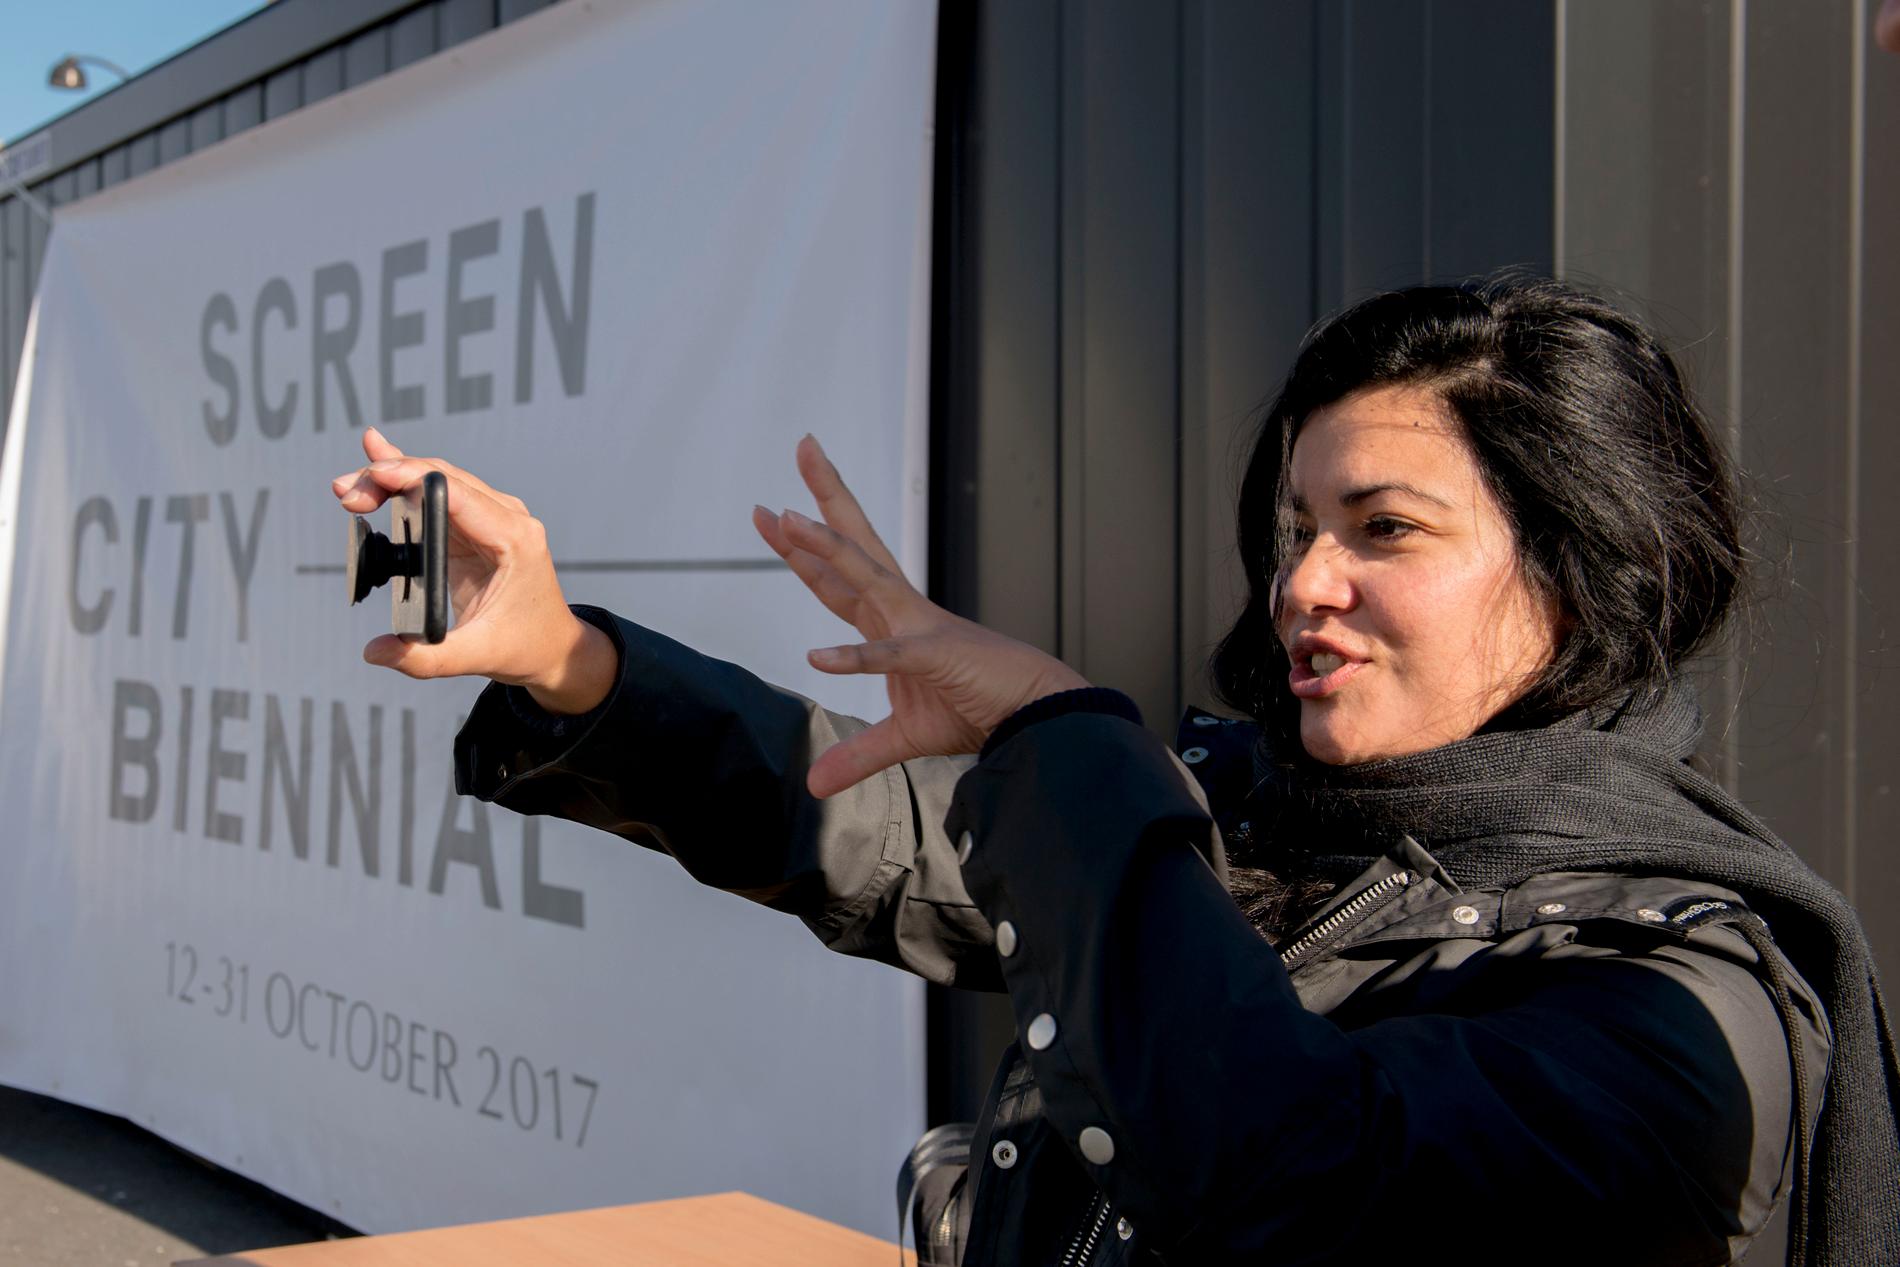  Daniela Arriado foran én av containerne ved Tollboden hvor det vil være utstilling av VR-kunst.  